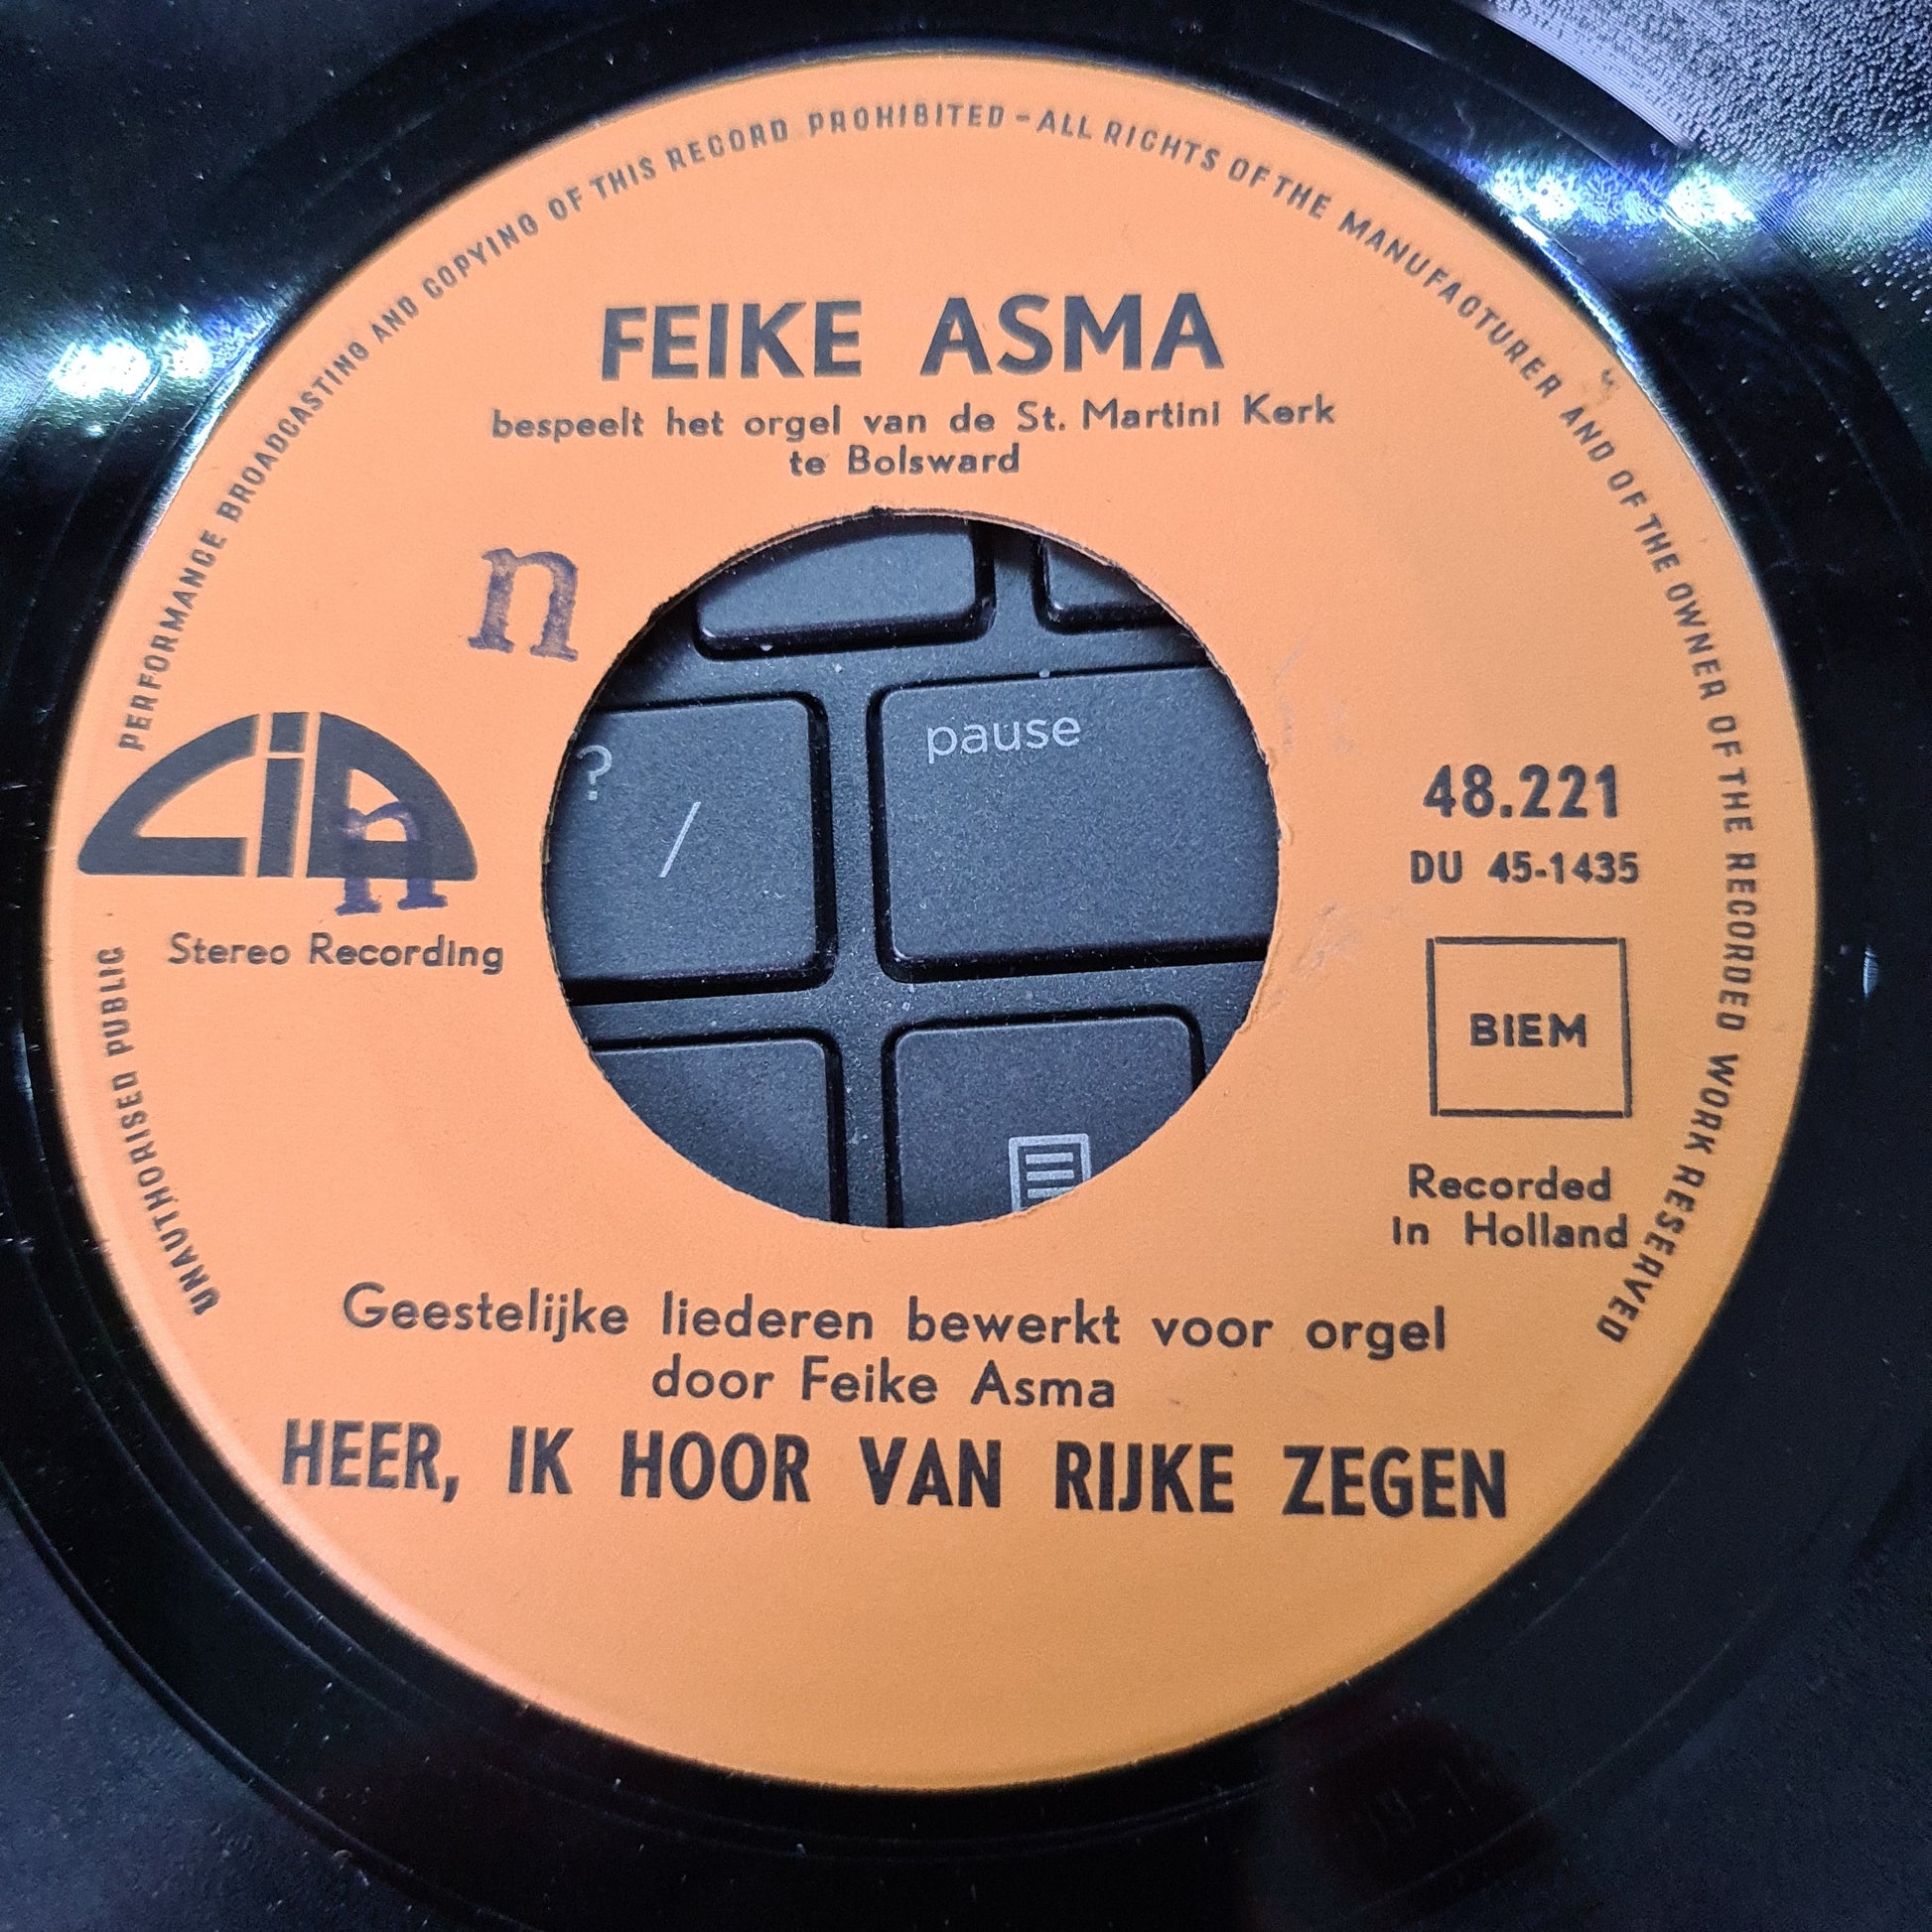 Feike Asma - Laat het loflied vrolijk rijzen 15747 Vinyl Singles VINYLSINGLES.NL